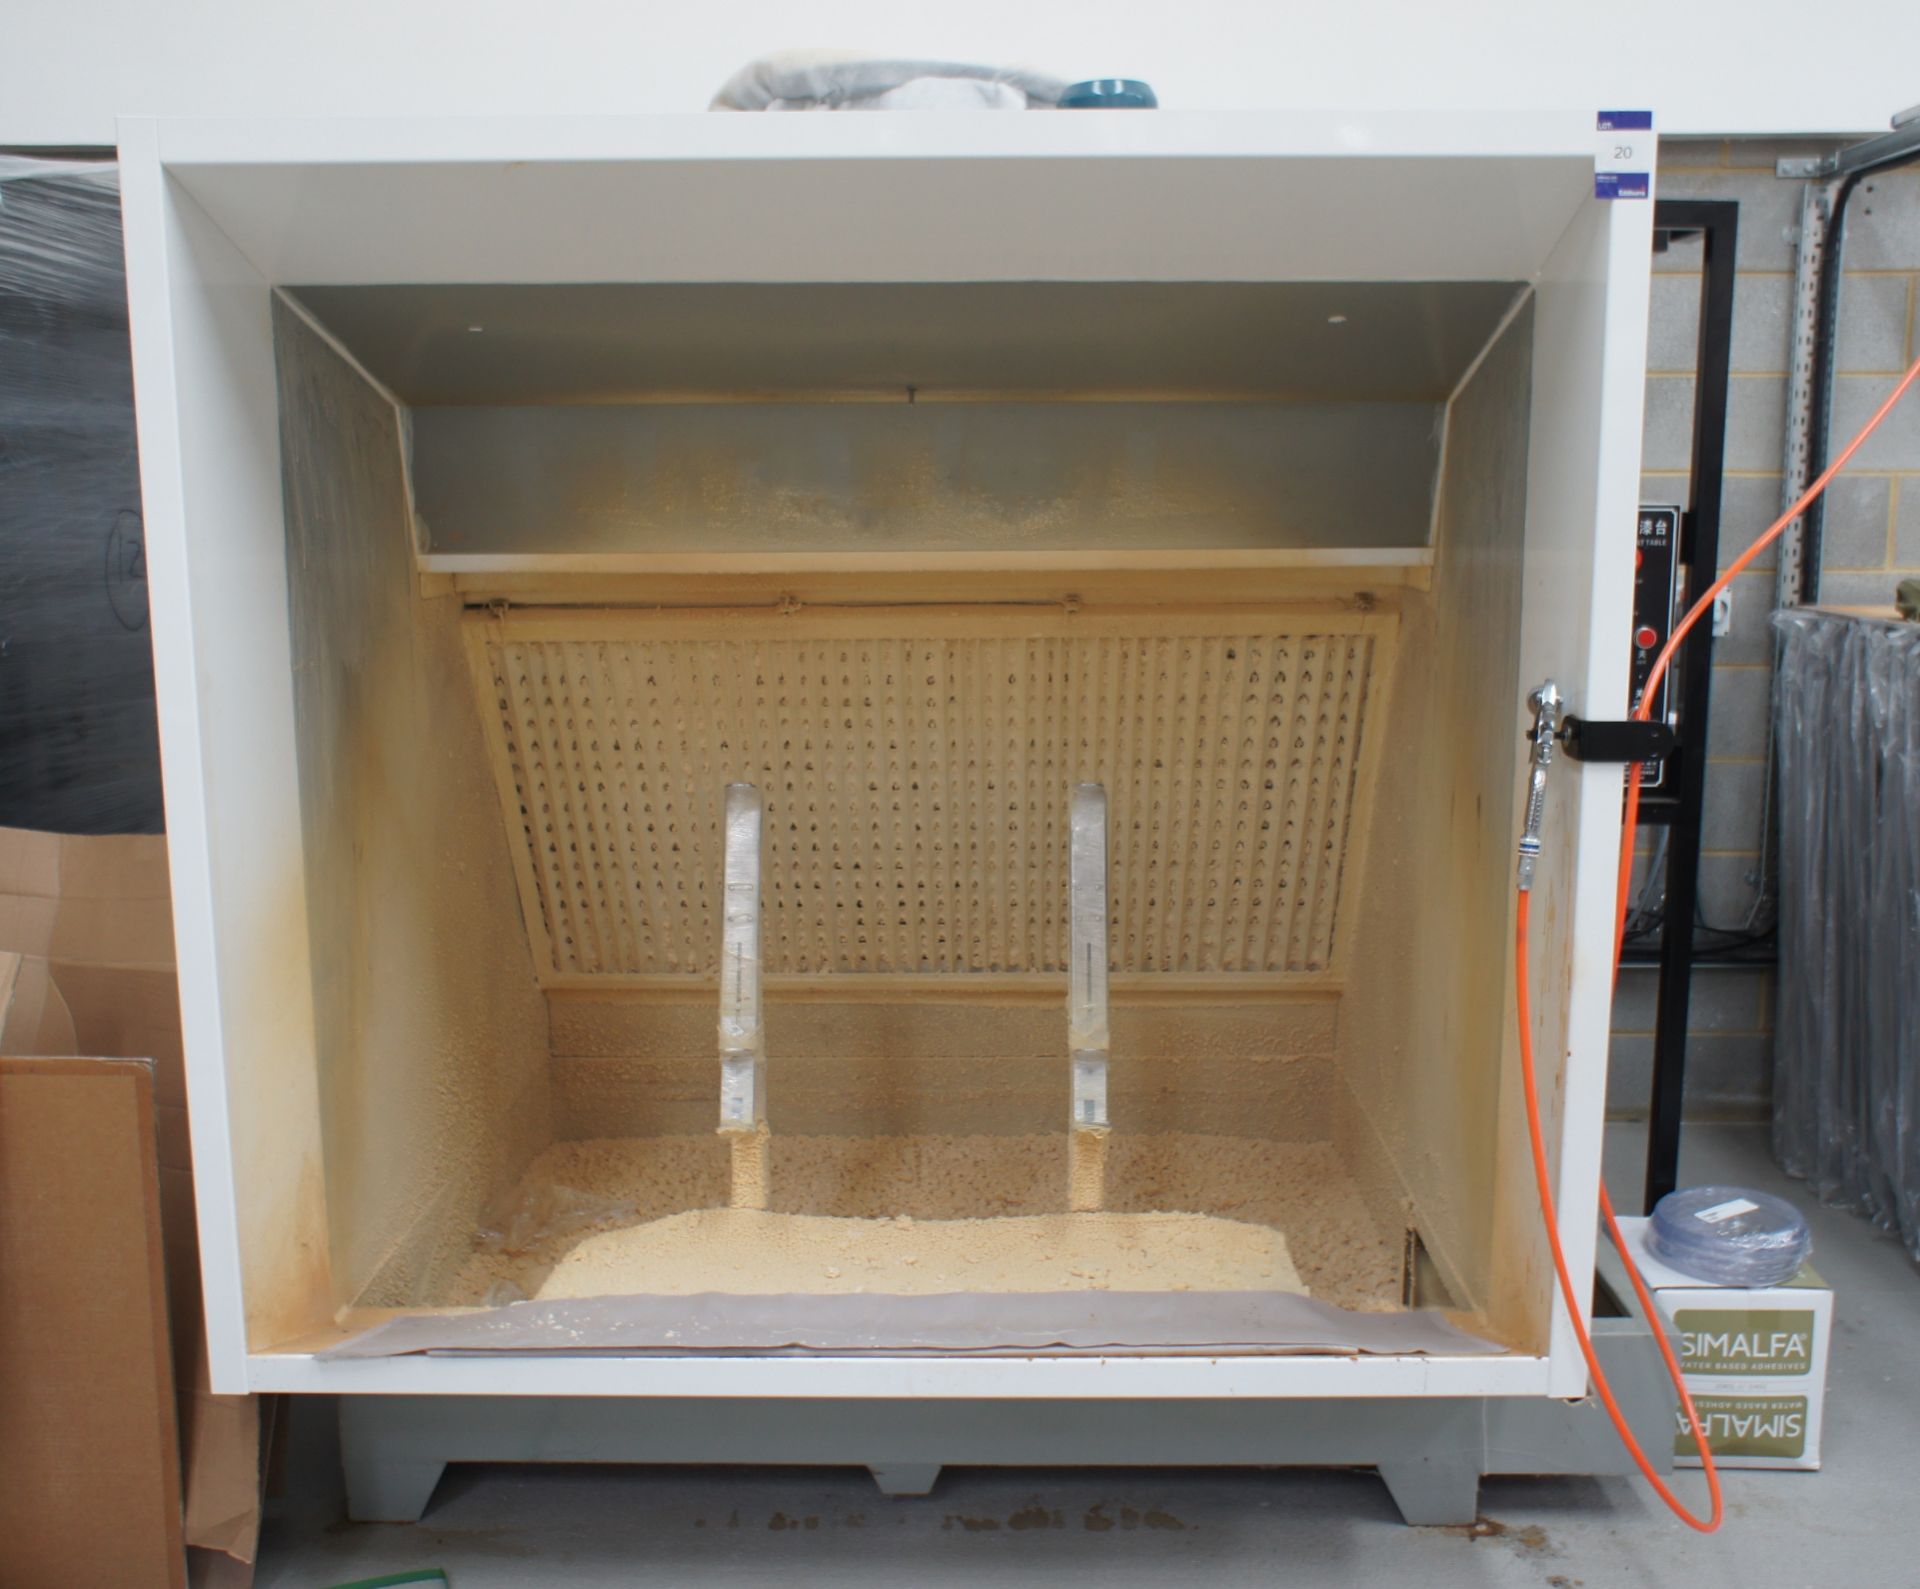 Foshan washing spray booth, with spray gun (Dimensions = 2300 x 2000 x 1650)